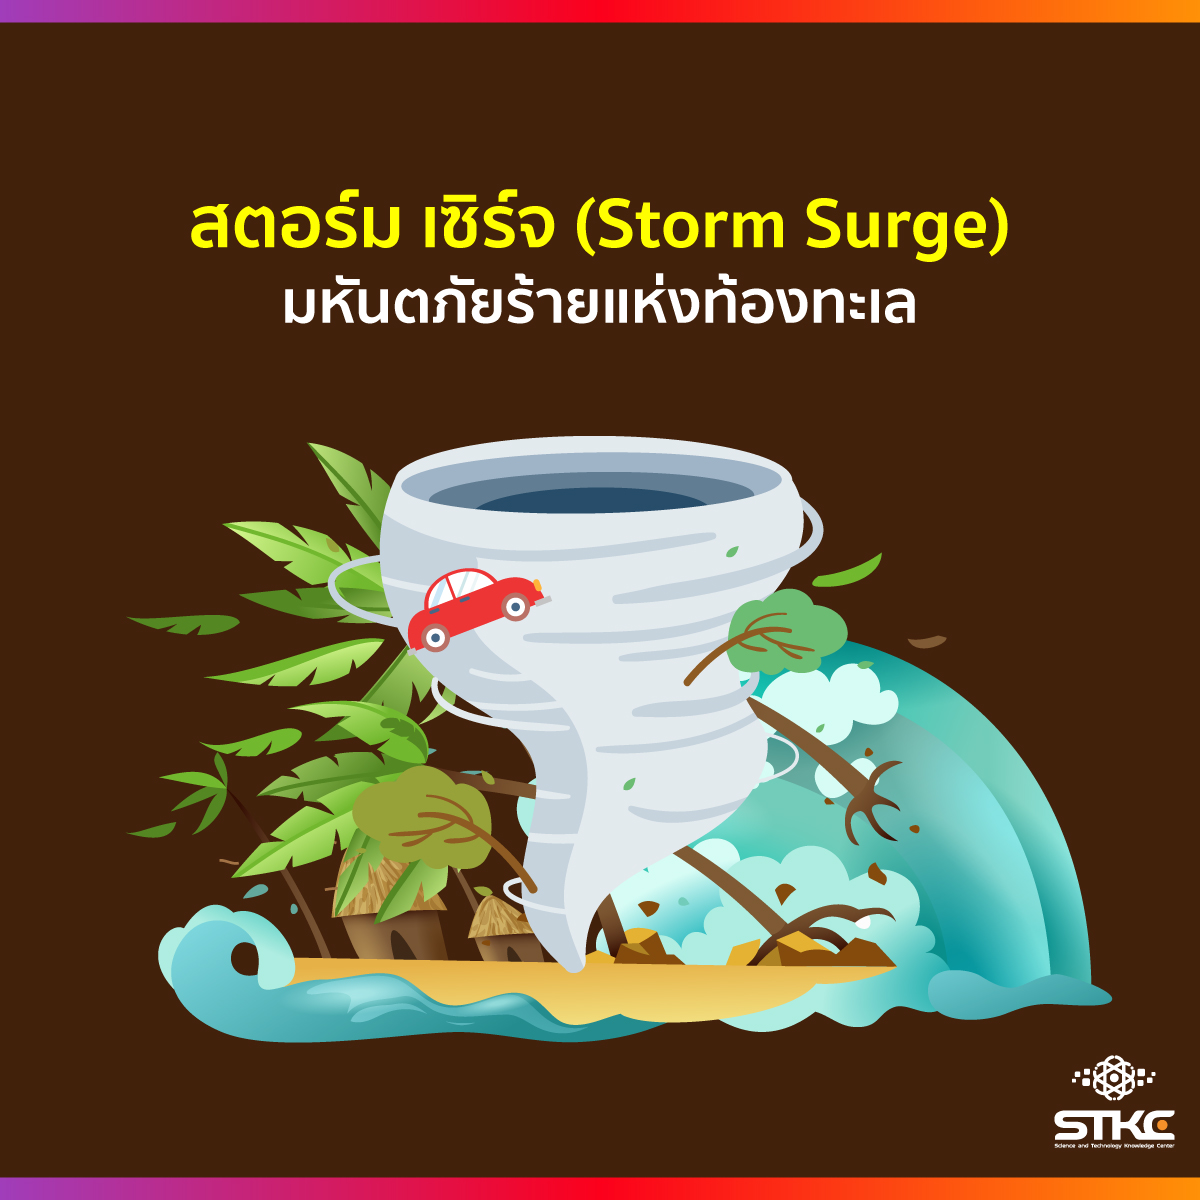 สตอร์ม เซิร์จ (Storm Surge) มหันตภัยร้ายแห่งท้องทะเล